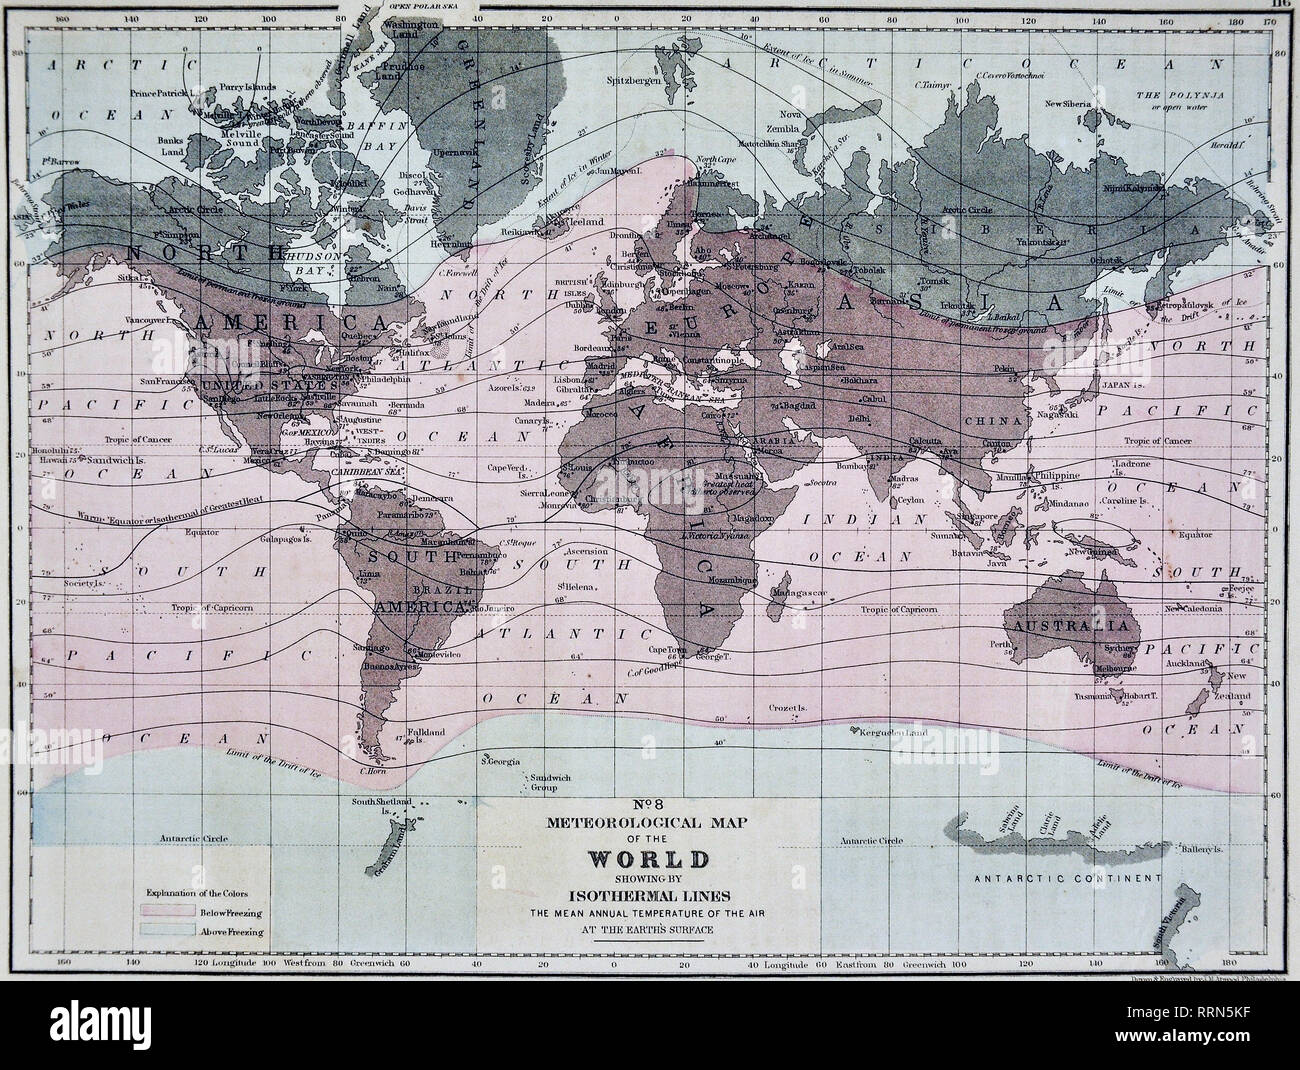 1868 Mitchell World Meteorological Karte mit Isothermen Linien der jährliche mittlere Temperatur der Luft an der Oberfläche der Erde Stockfoto